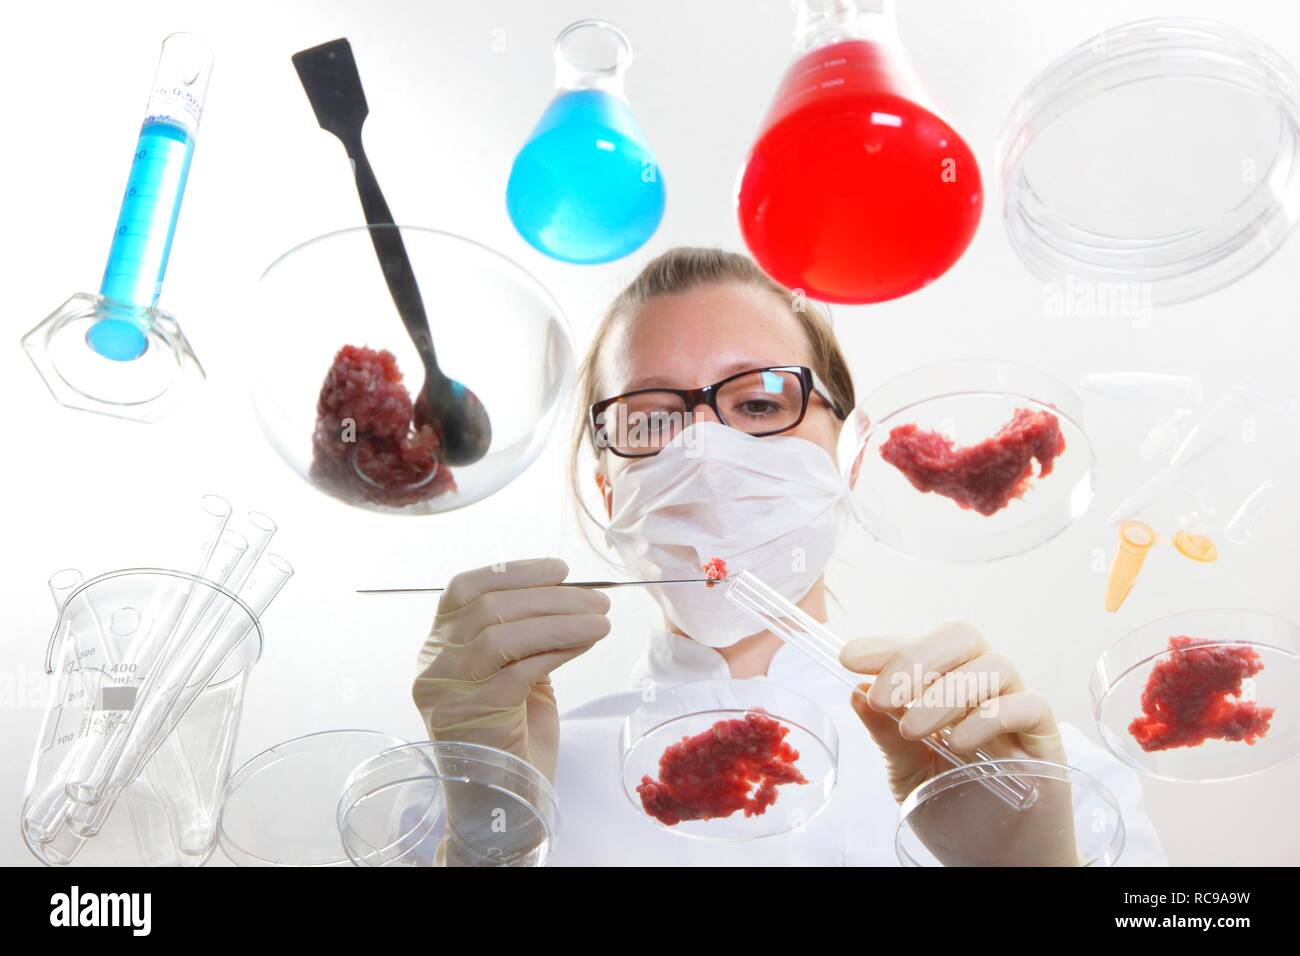 Essen Prüfung, Labor, Techniker, untersuchen Hackfleisch Proben und bereitet sie für Tests für die Exposition gegenüber Bakterien, Erreger Stockfoto